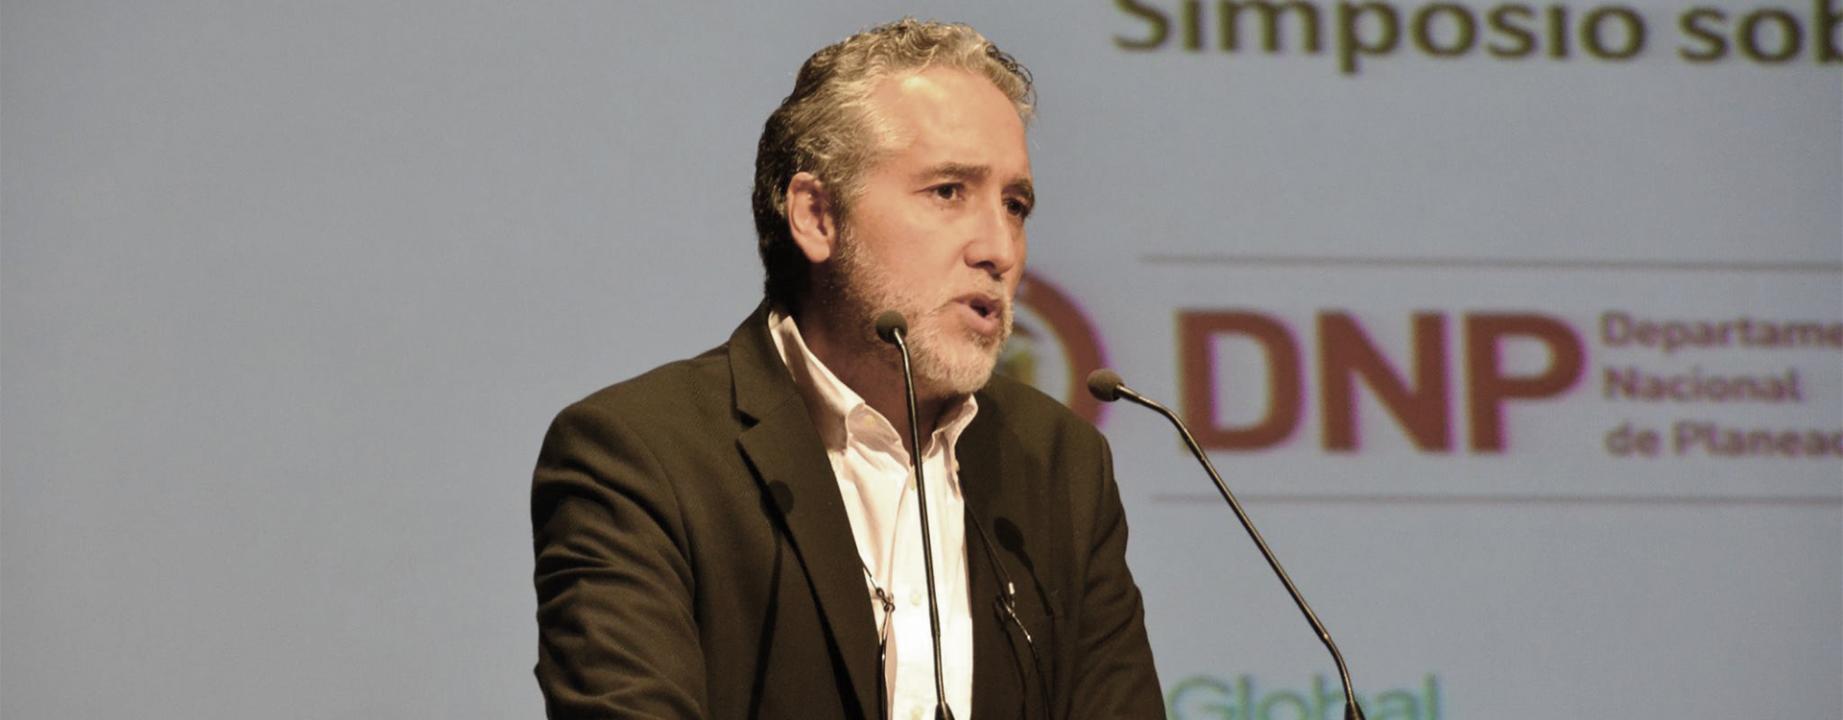 Juan Carlos Cárdenas, facultad de economía, universidad de los andes